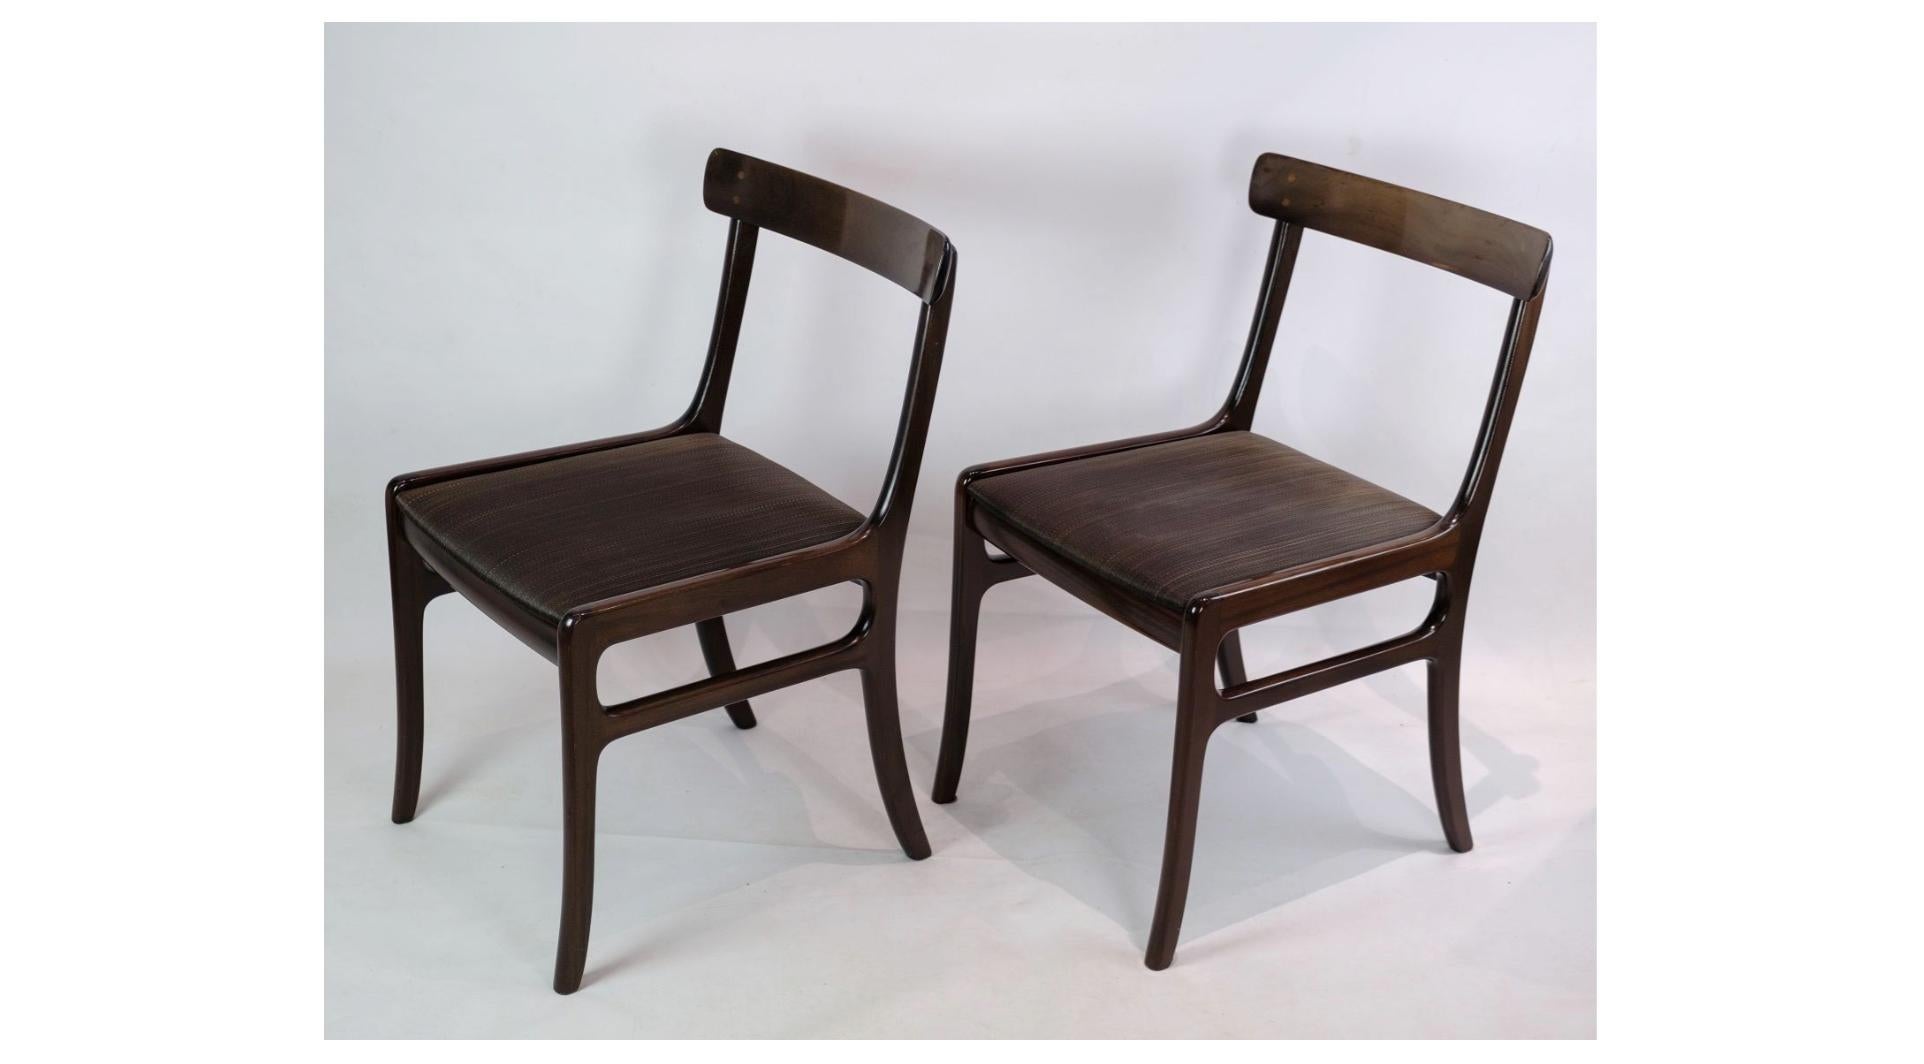 Ein Paar Rungstedlund-Esszimmerstühle aus Mahagoni, entworfen von Ole Wanscher und hergestellt von P. Jeppesen, ist ein schönes Beispiel für zeitloses dänisches Design. Diese Stühle strahlen eine erhabene Eleganz und Schlichtheit aus, die jedem